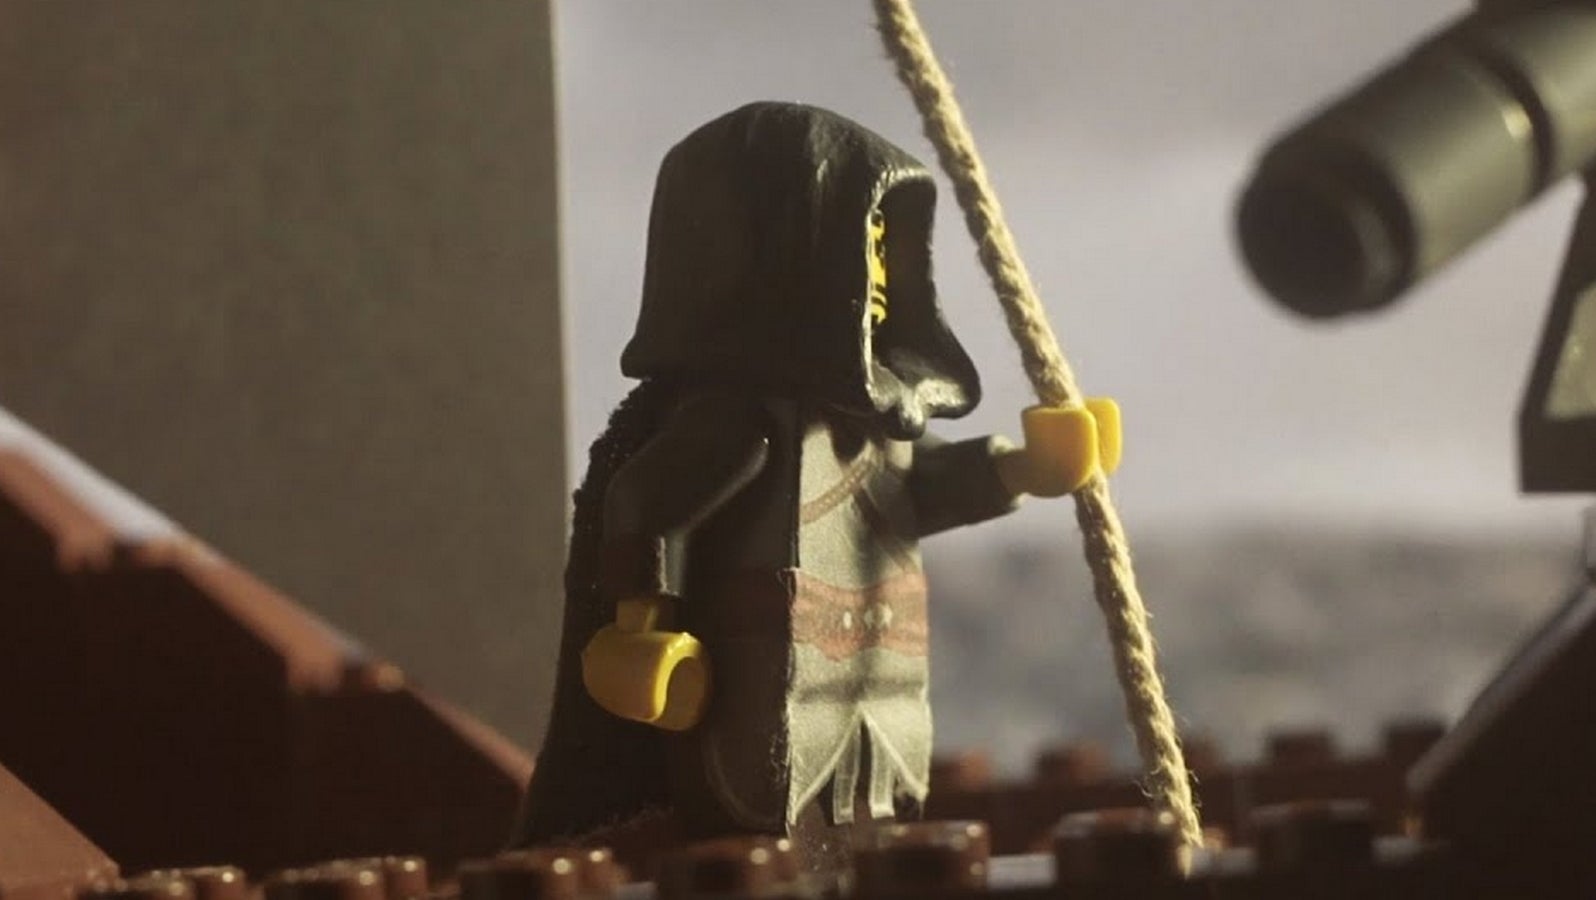 Bilder zu So sieht es aus, wenn jemand Assassin's Creed mit Lego nachbaut